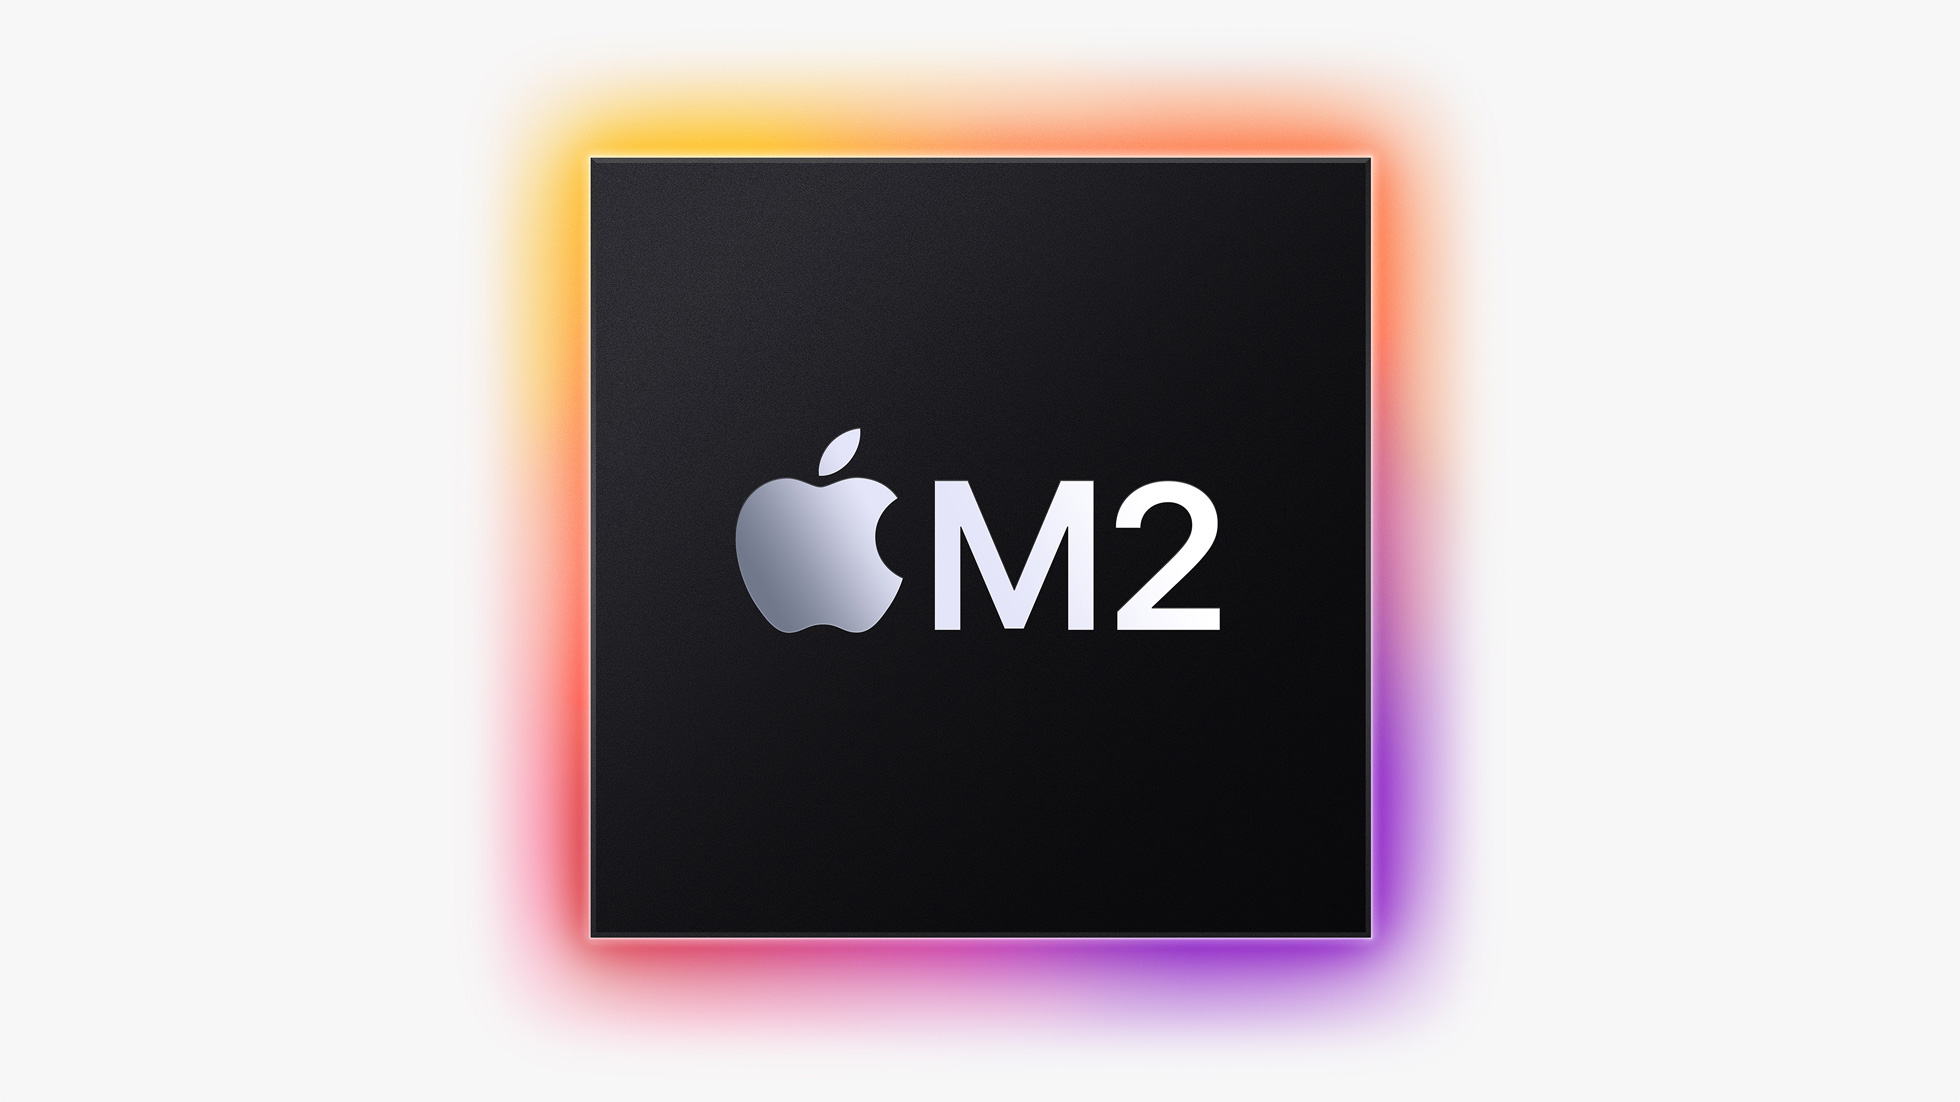 Apple חושפת את מעבד הבית החדש ה- M2, ולוקחת את הביצועים והיכולות פורצות הדרך של M1 אפילו רחוק יותר